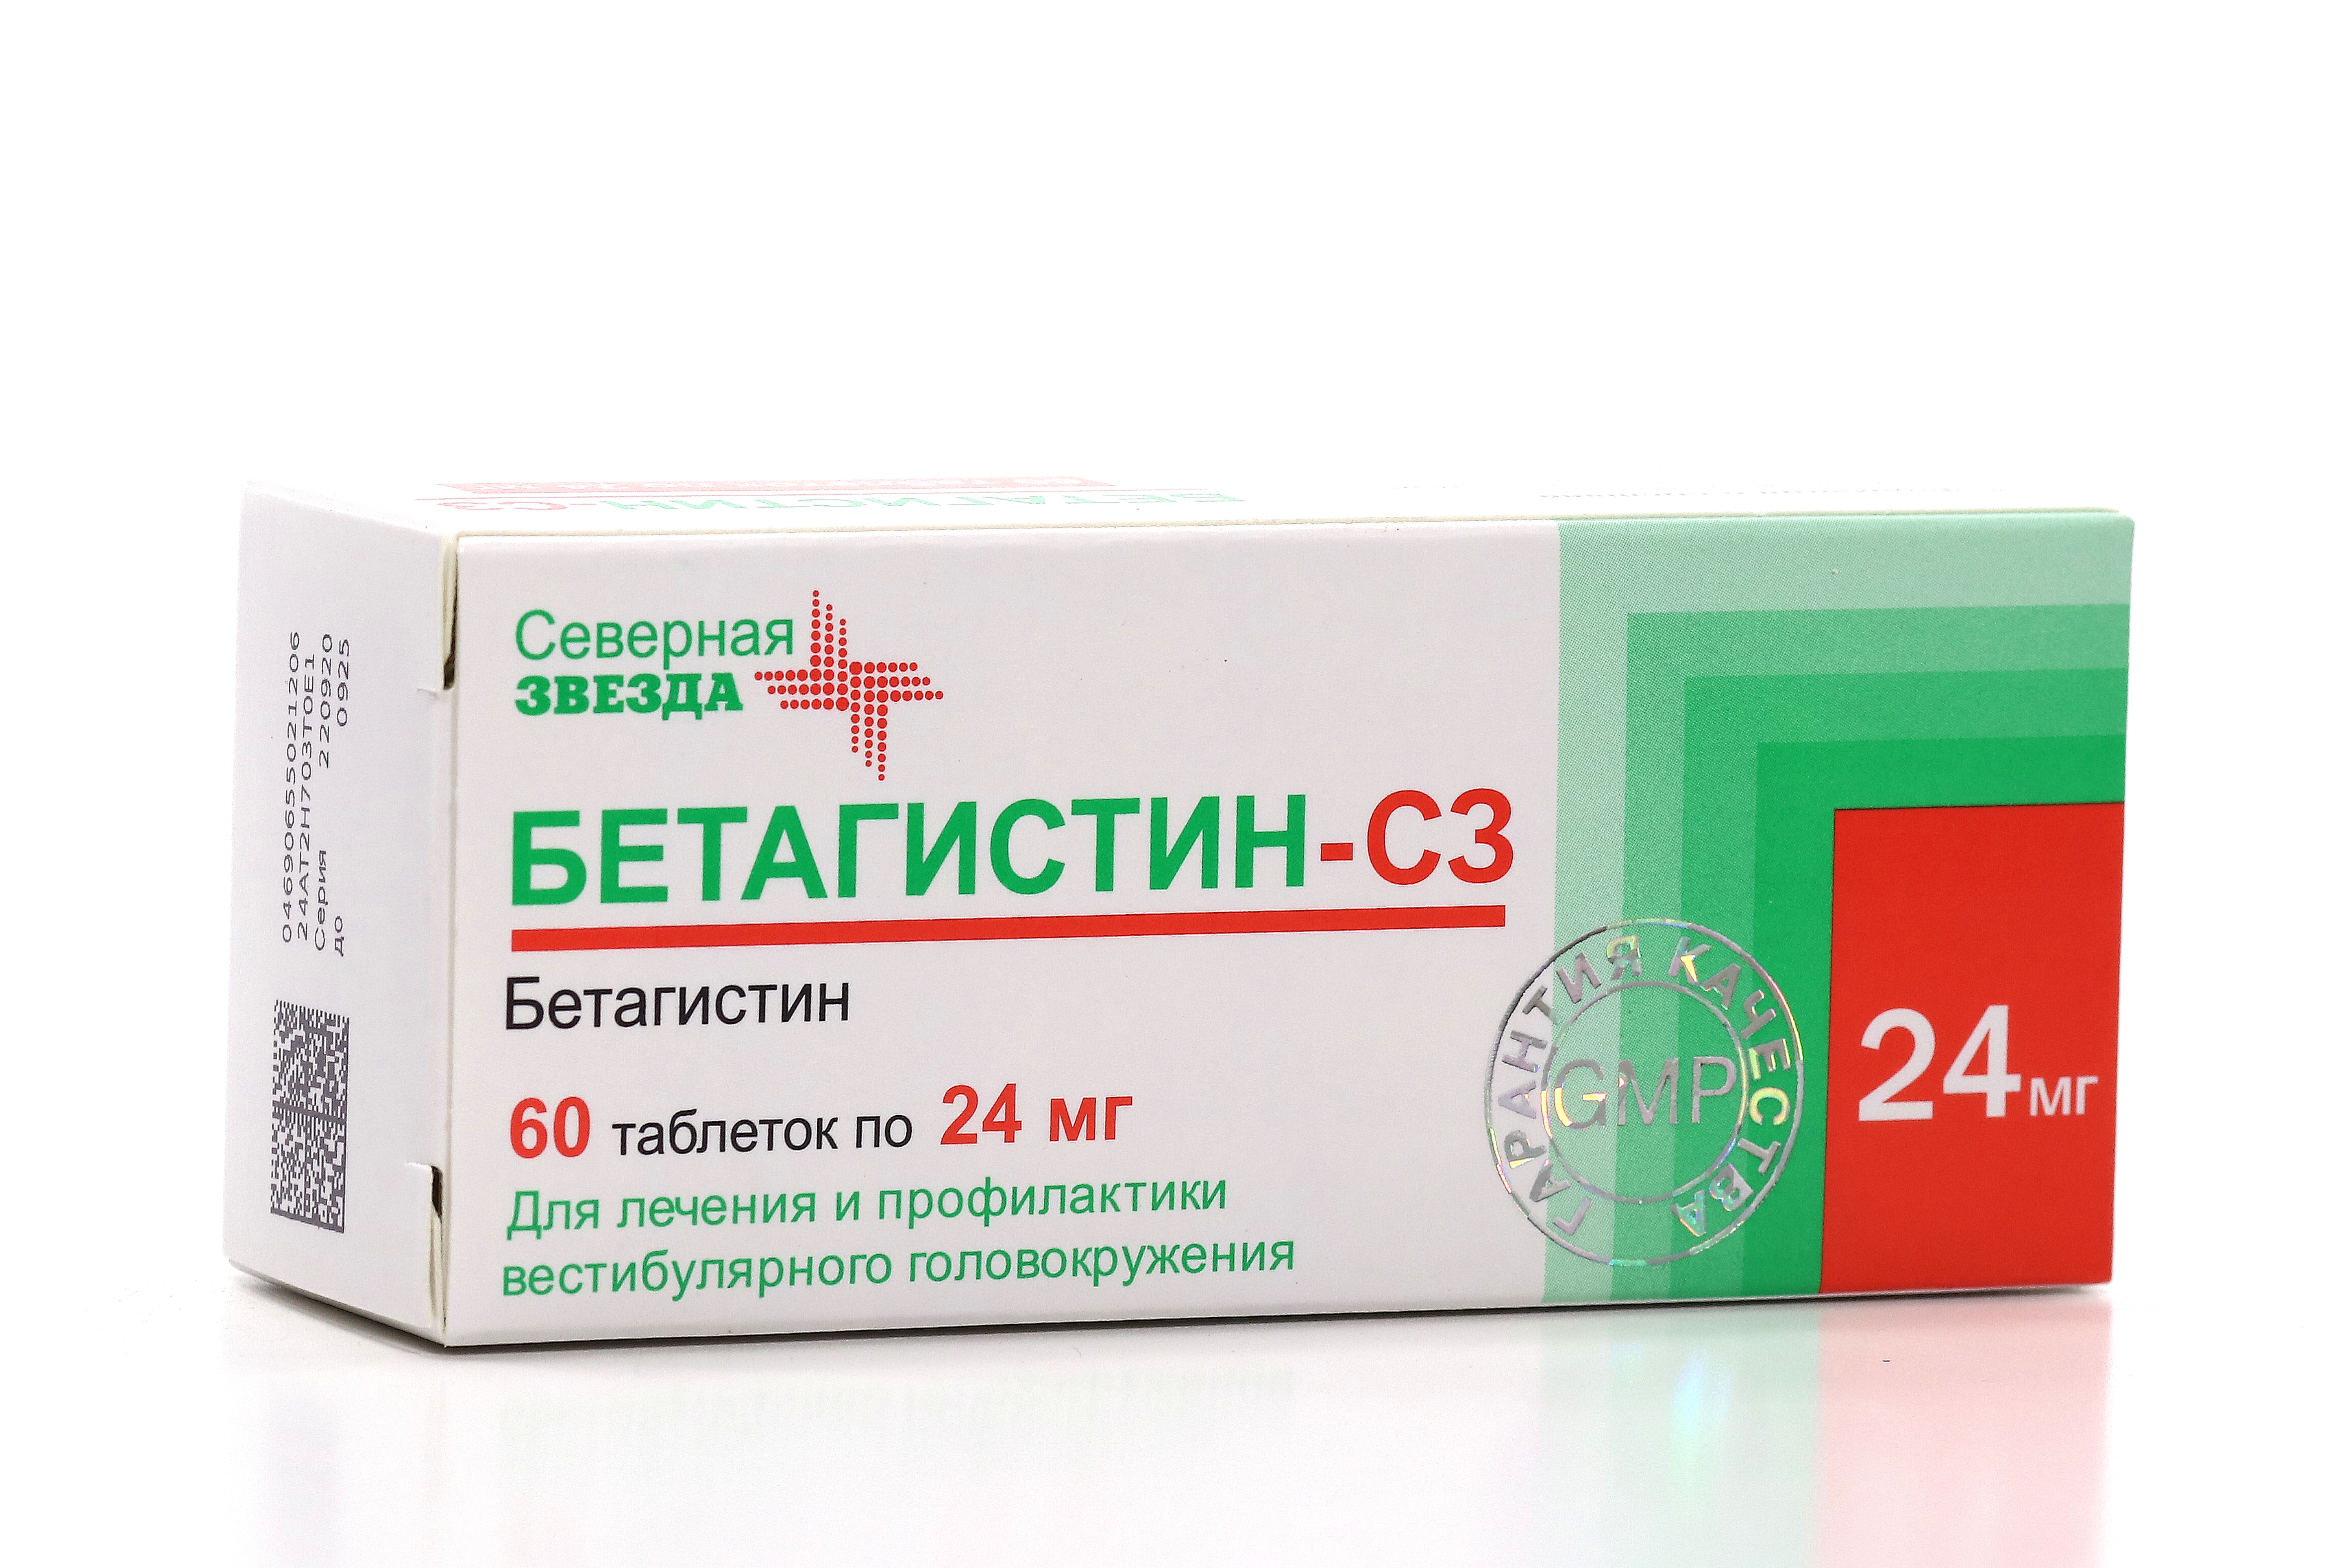 Бетагистин 24 мг. КАРДИАСК магний 75мг.+15,2мг. №100 таб. П/П/О банка /Канонфарма/. Цена Бетагистин 24мг 60шт сколько стоит.